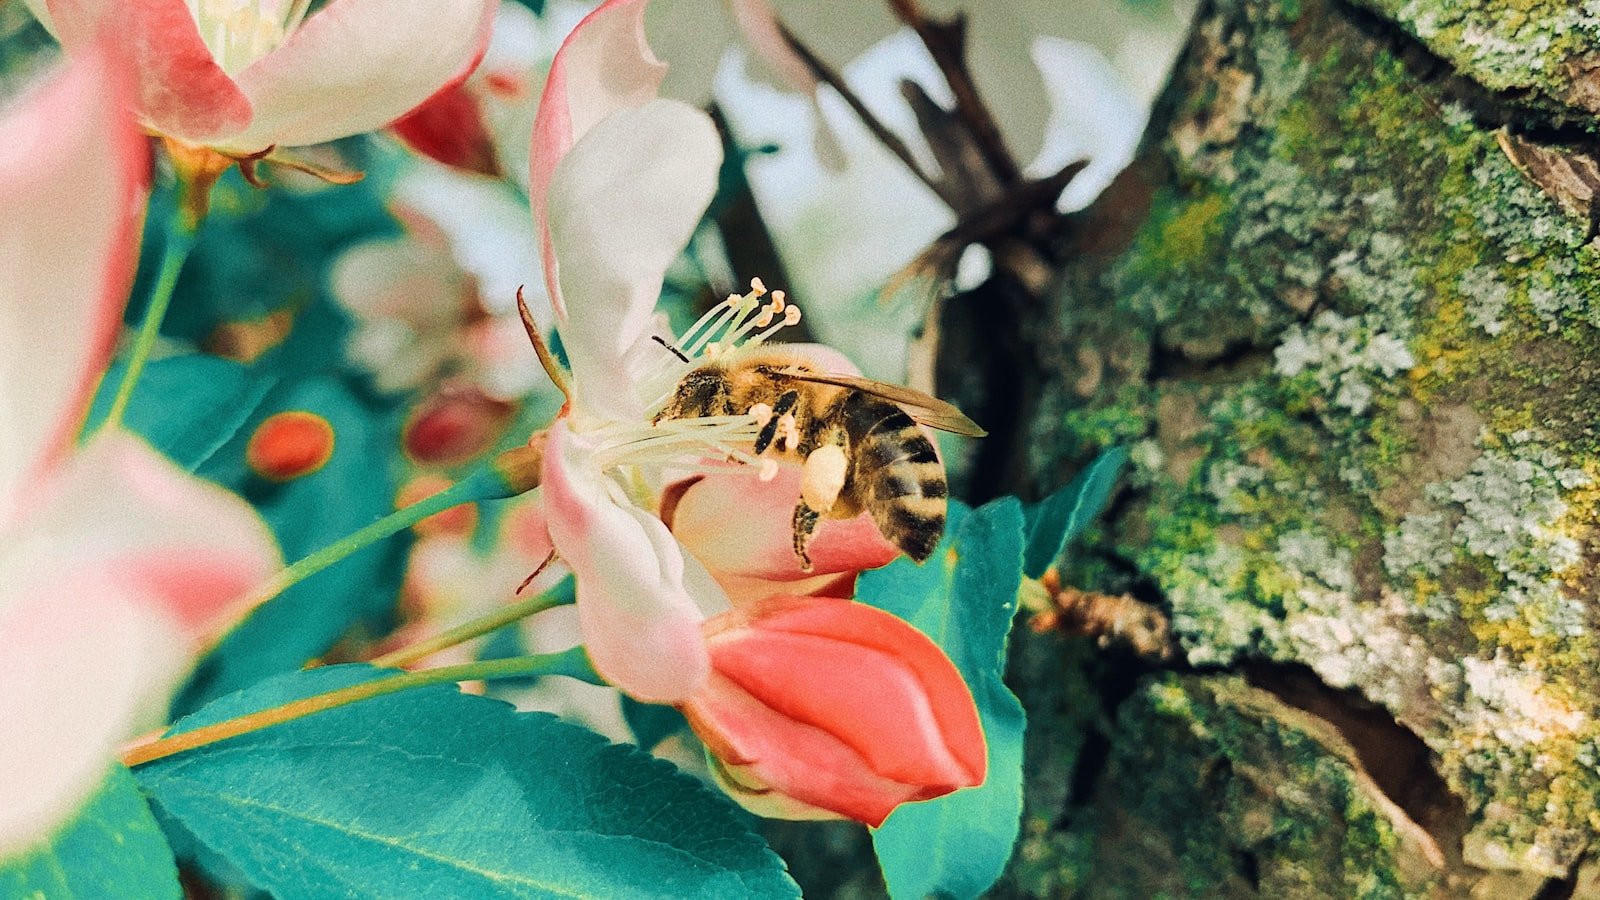 Creating a Haven for Bees through Garden Art